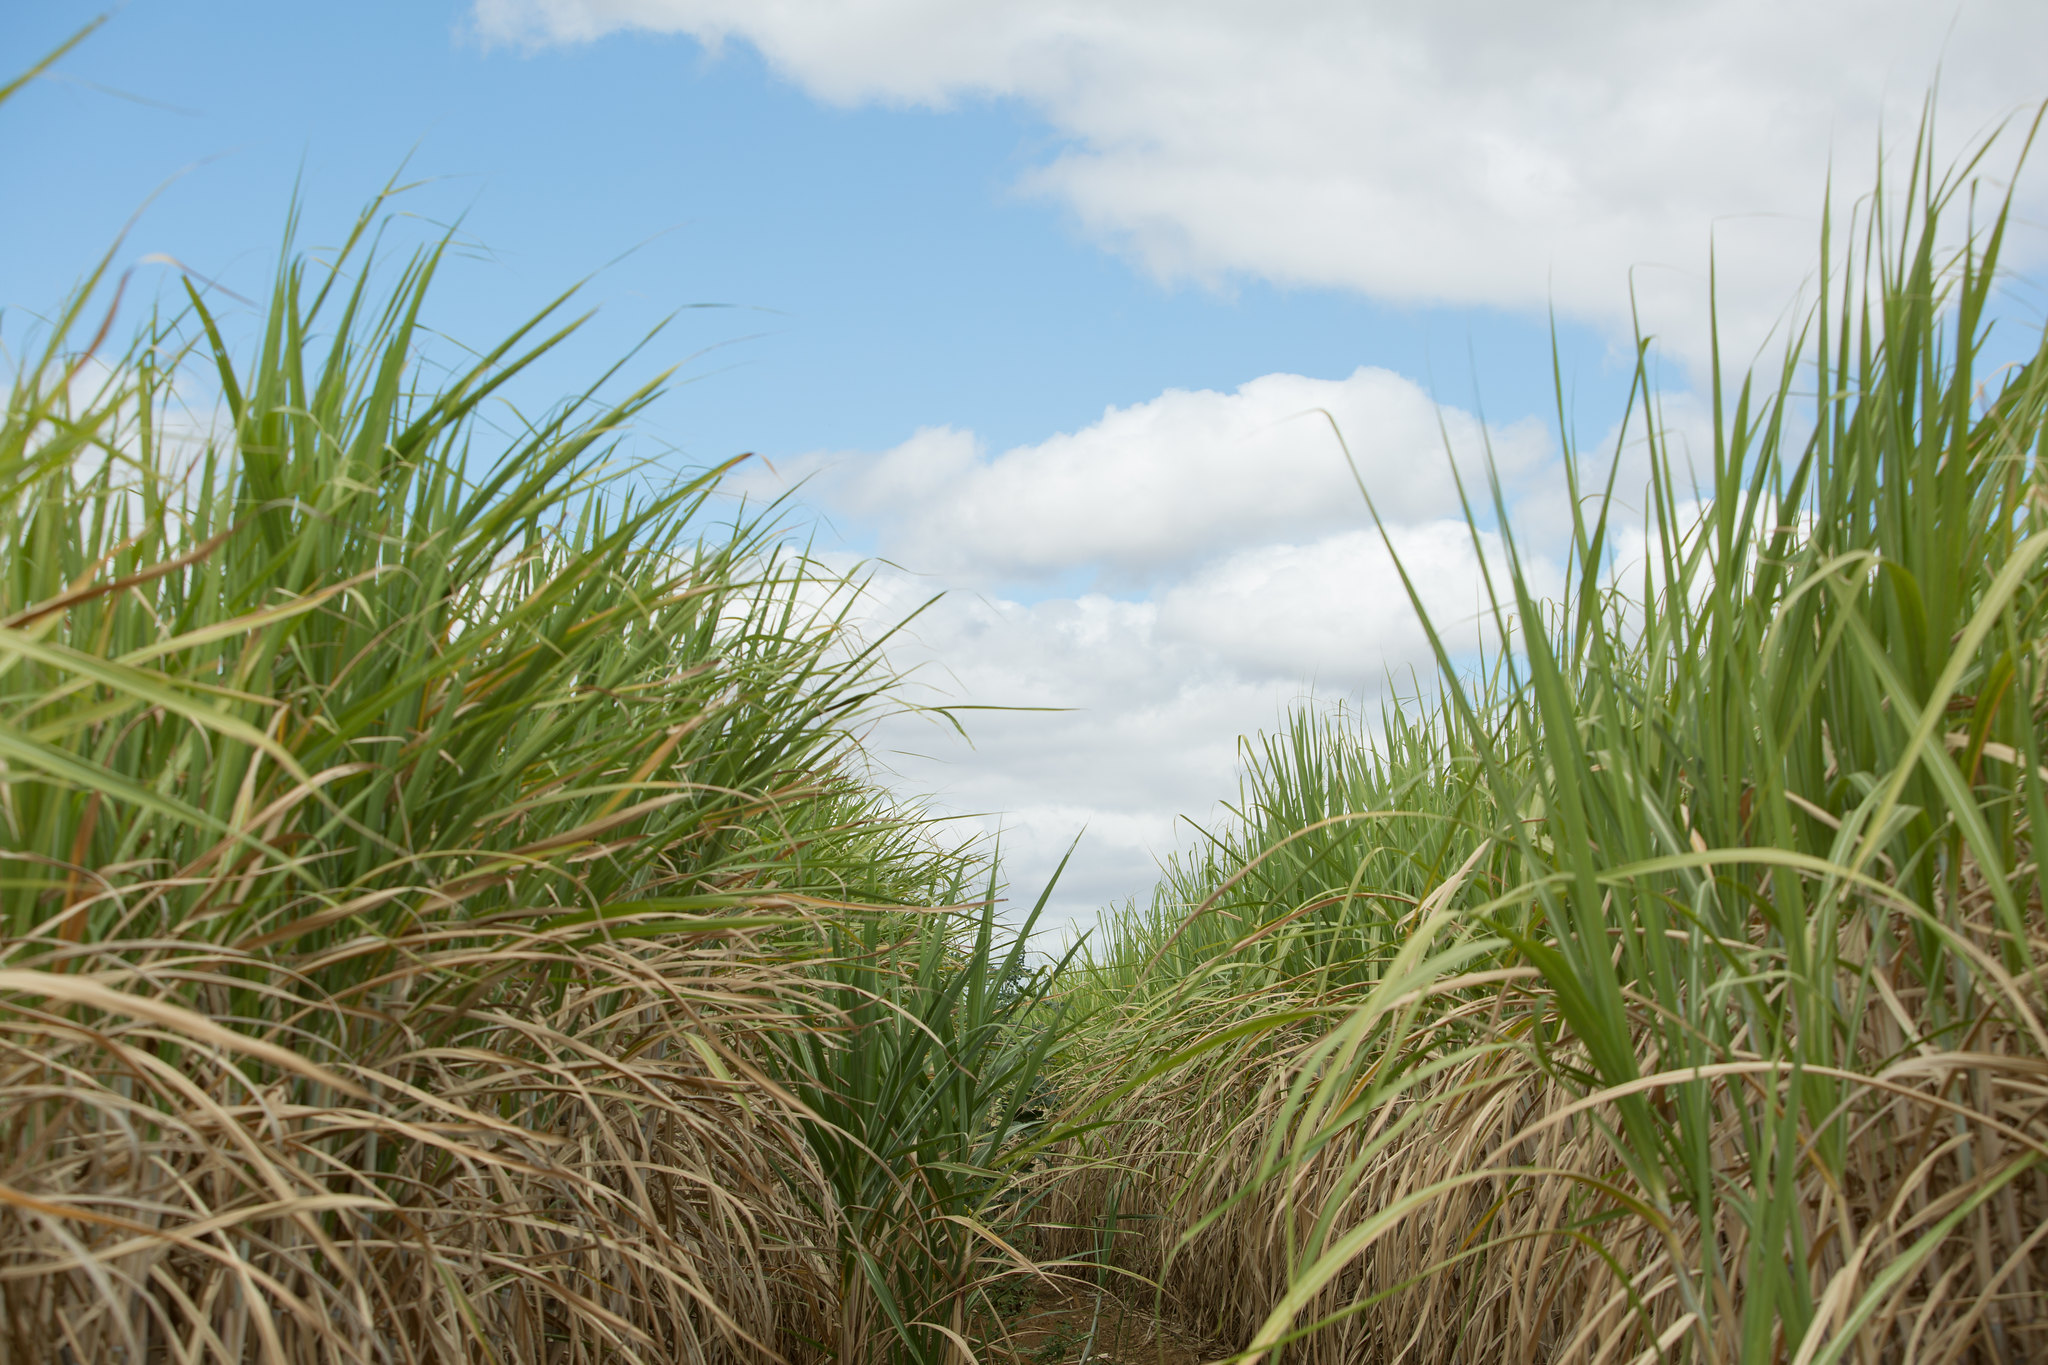 Special bacteria helps control nematodes in sugarcane